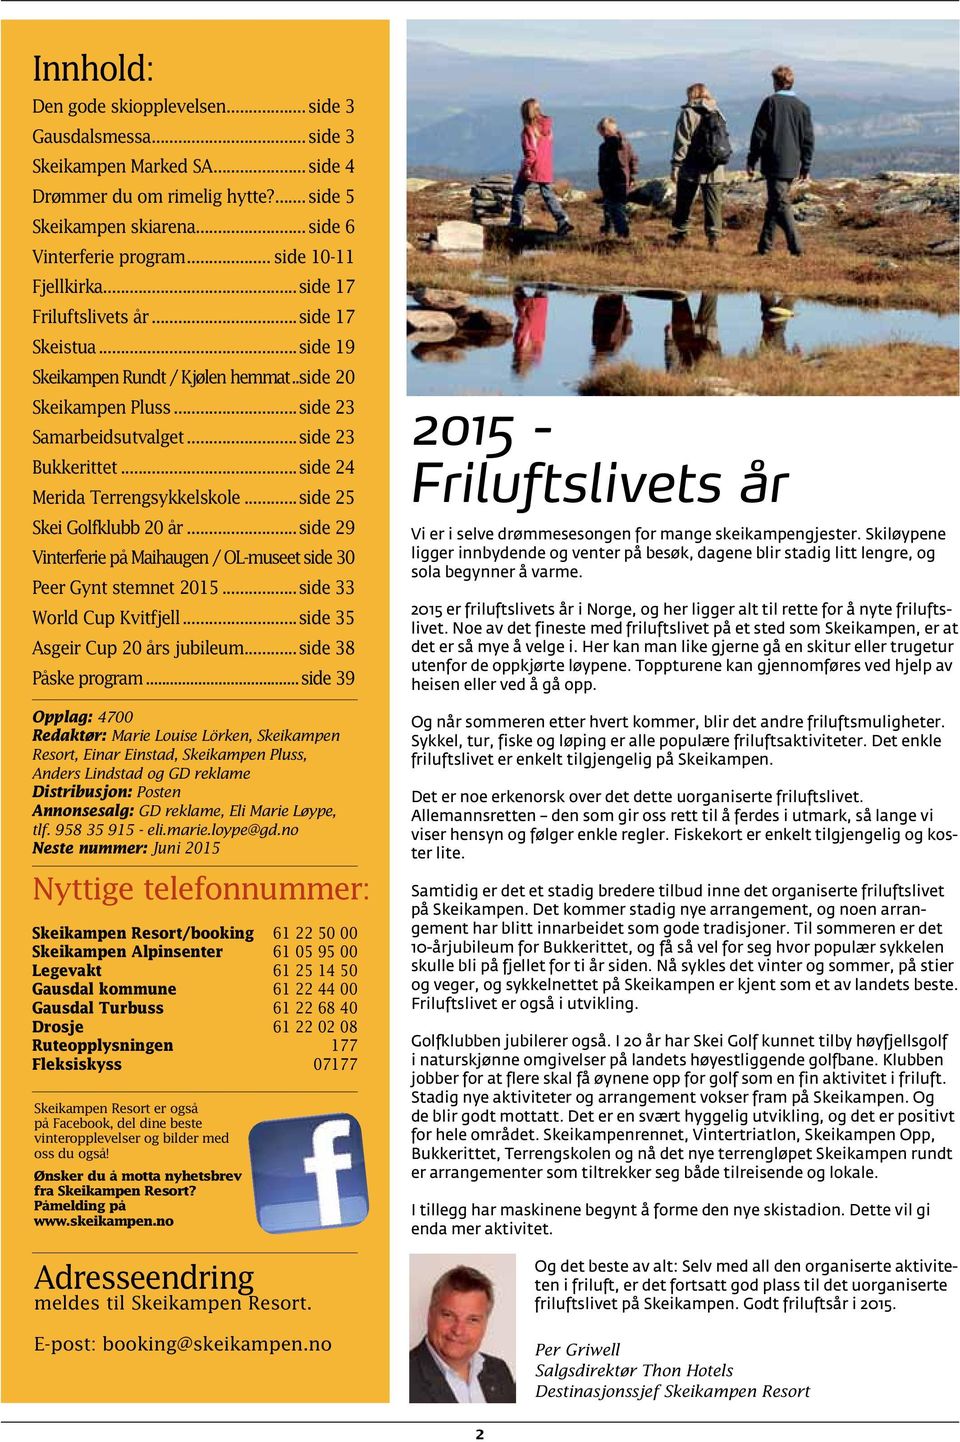 ..side 24 Merida Terrengsykkelskole...side 25 Skei Golfklubb 20 år...side 29 Vinterferie på Maihaugen / OL-museet.side 30 Peer Gynt stemnet 2015...side 33 World Cup Kvitfjell.